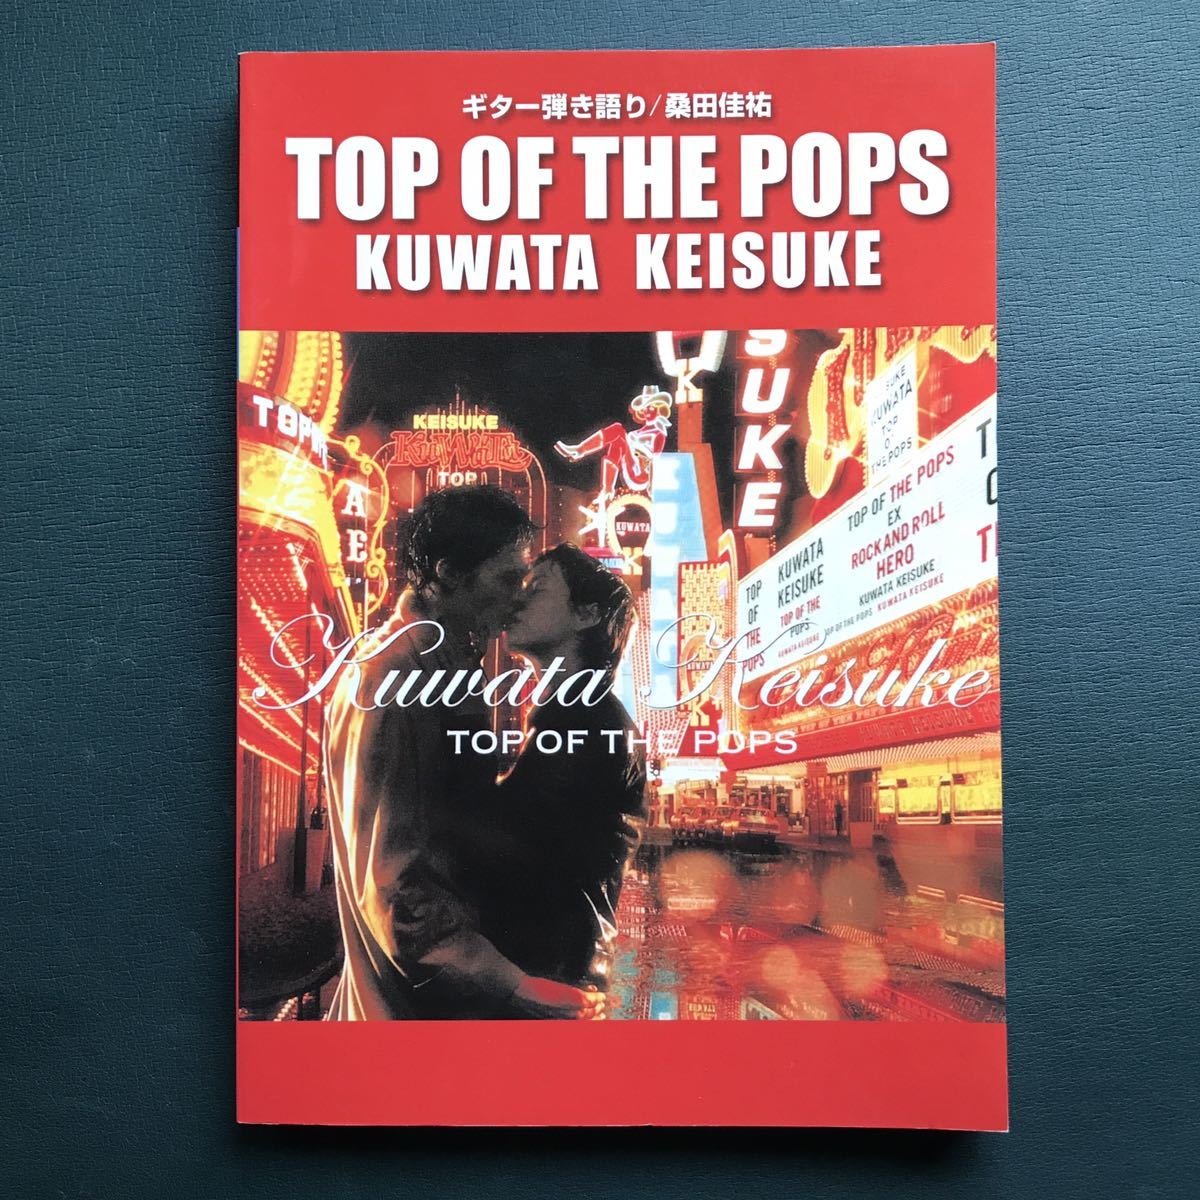 ギター弾き語り 桑田佳祐 ベストアルバム全26曲TOP OF THE POPSの画像1